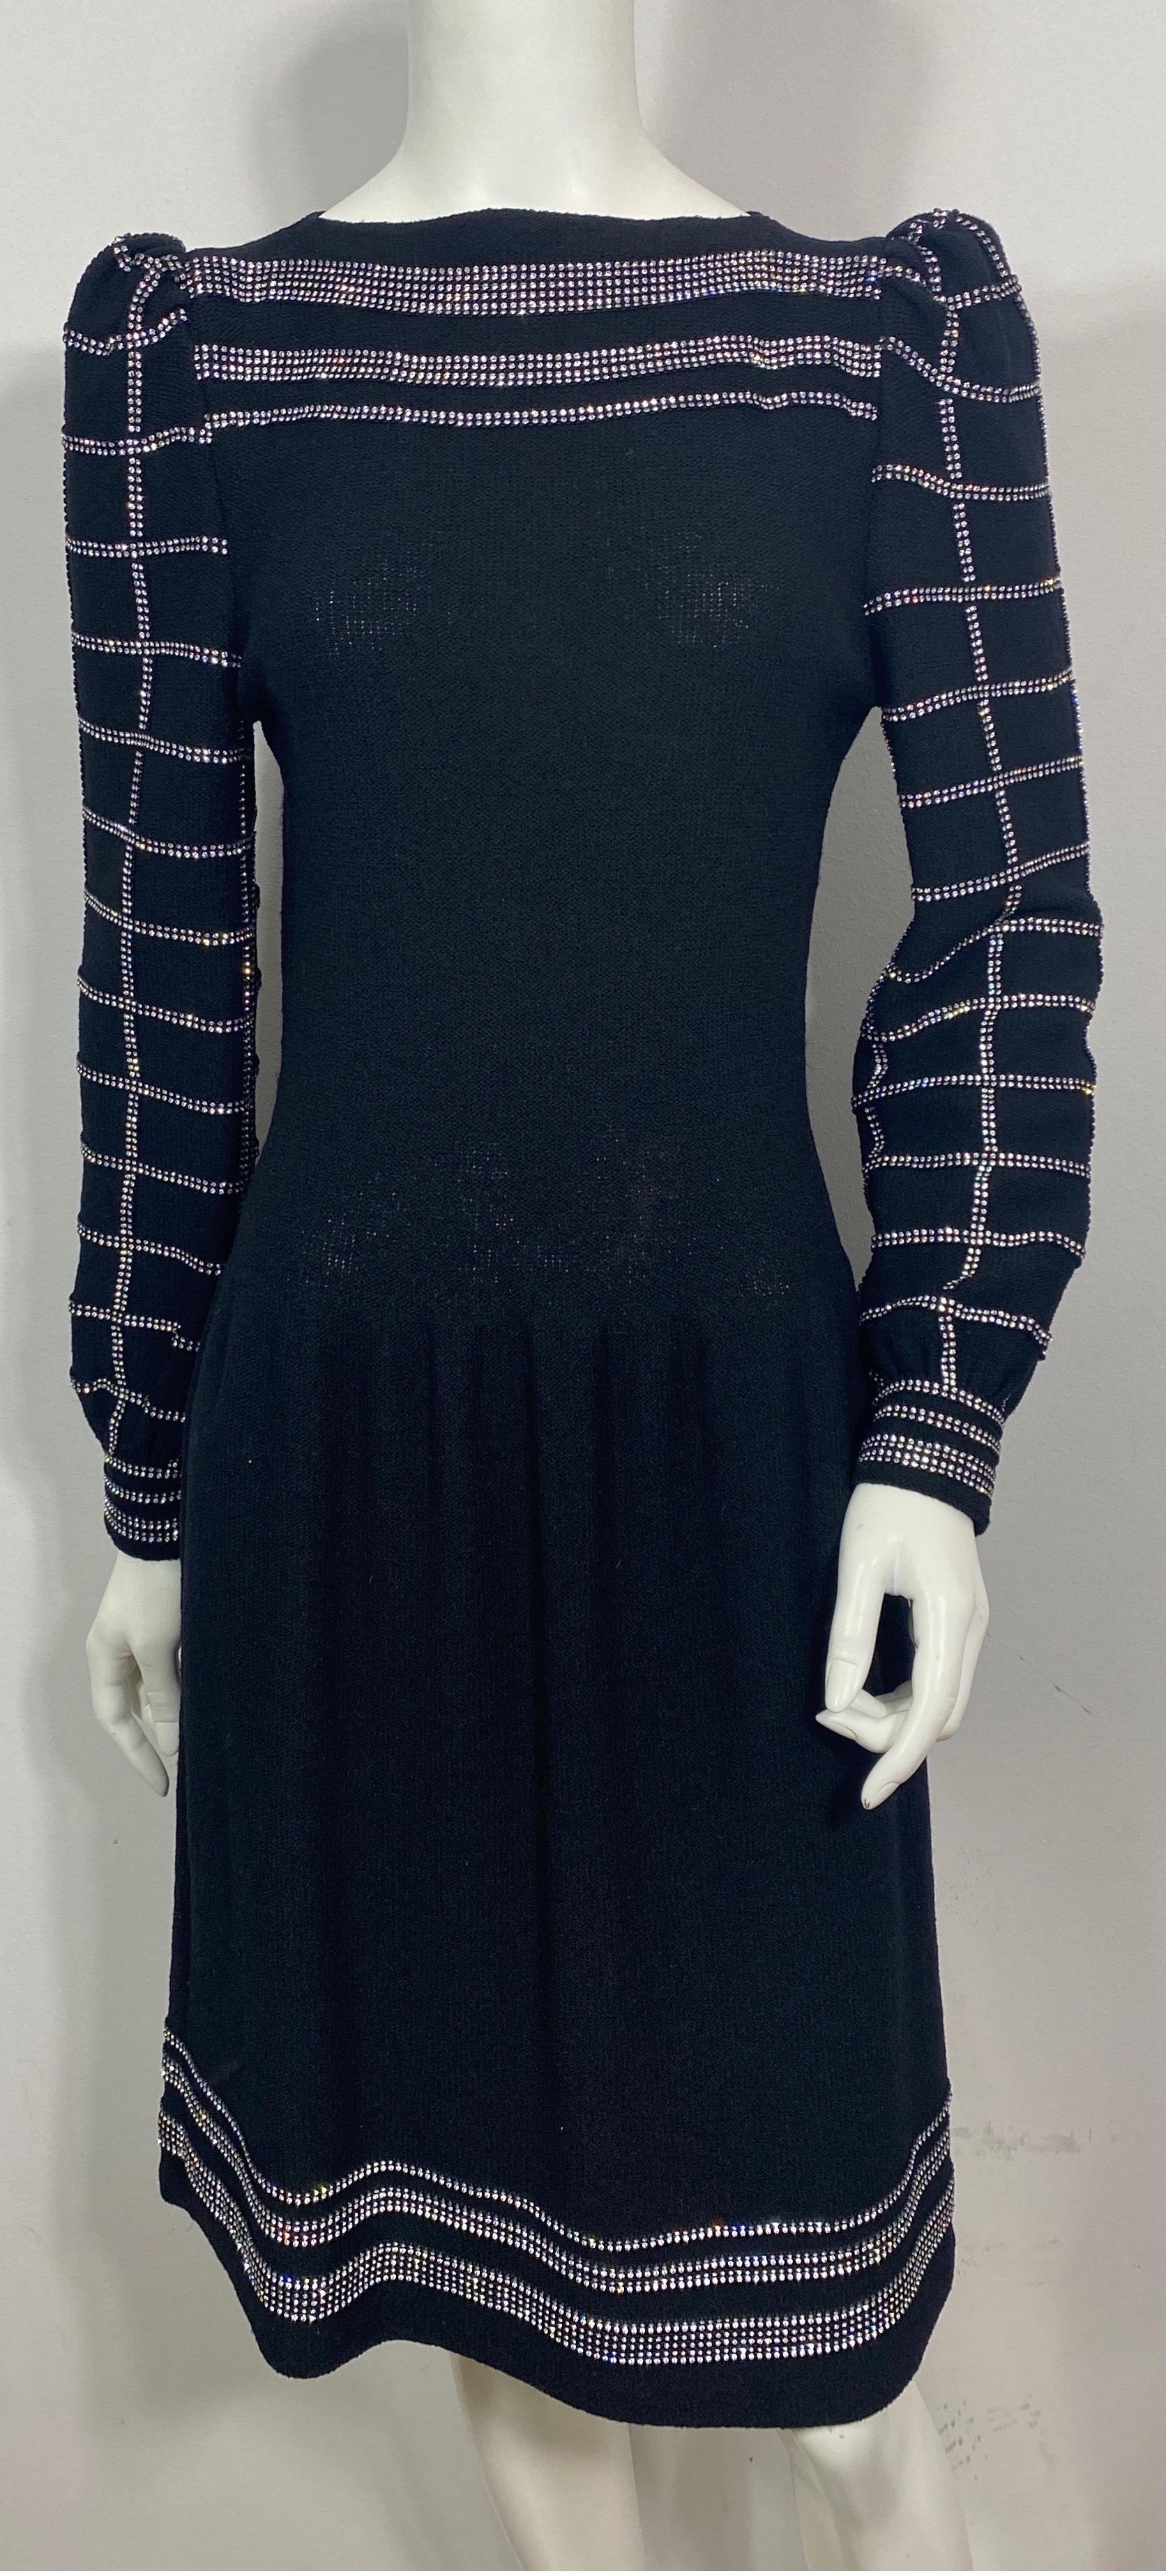 Adolfo 1980's Schwarz Wolle stricken Strass verschönert Kleid- Größe 6  Diese fantastische Kreation von Adolfo aus den 1980er Jahren ist aus schwarzem Wollstrick, hat einen Bateau-Ausschnitt mit 12 Reihen horizontaler Strasssteine entlang der